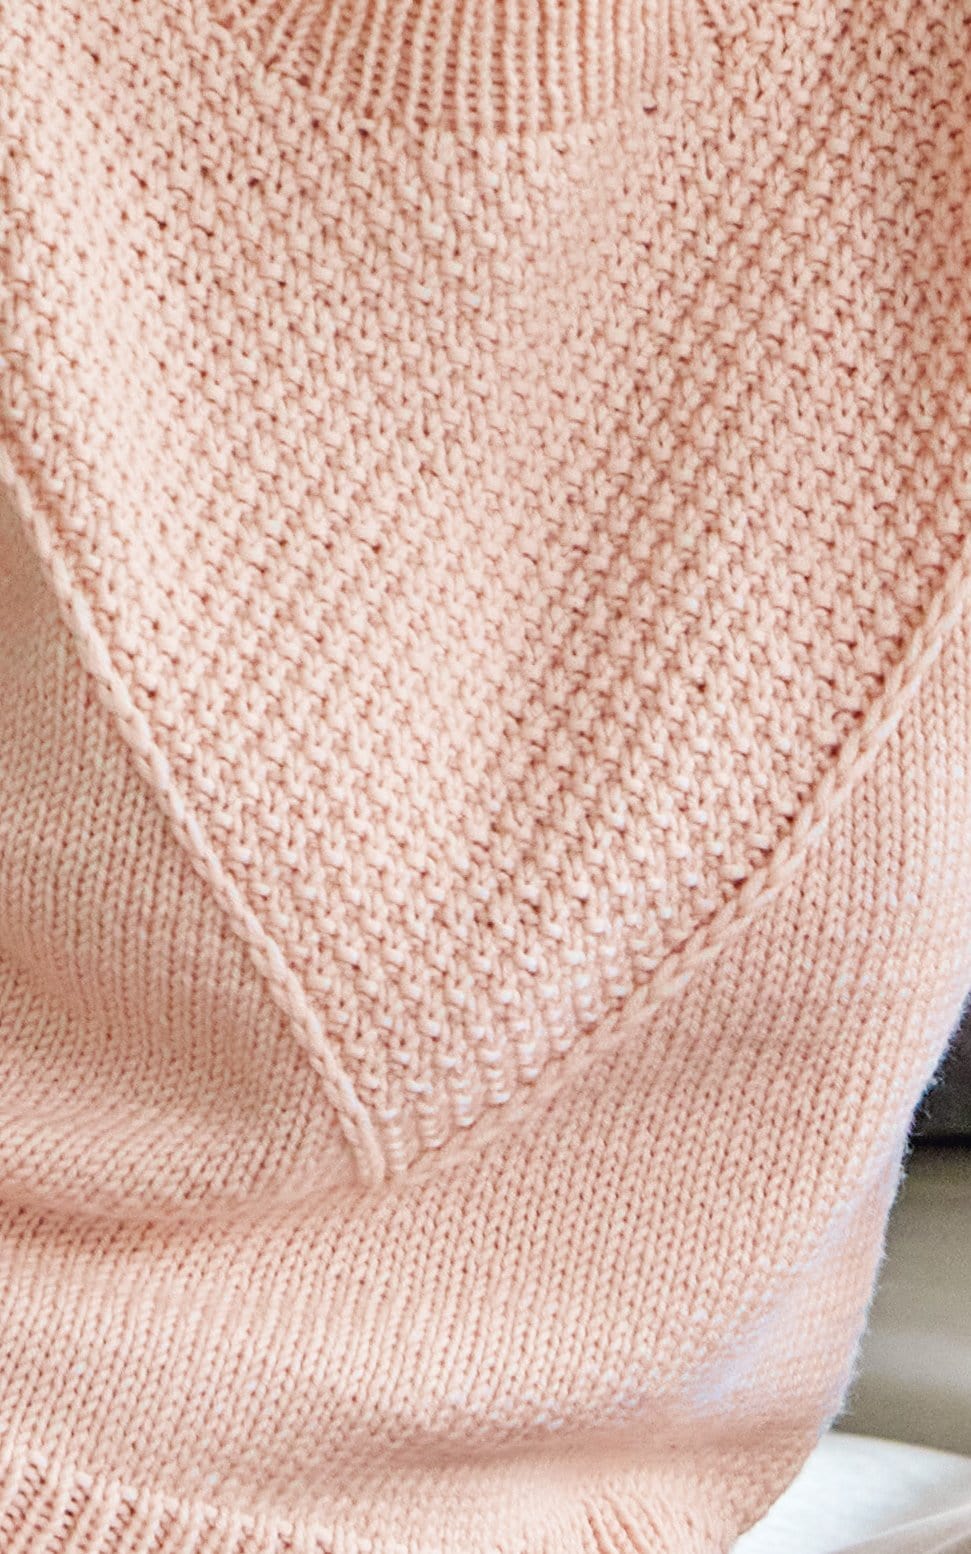 Pullover im Mustermix - BINGO - Strickset von LANA GROSSA jetzt online kaufen bei OONIQUE